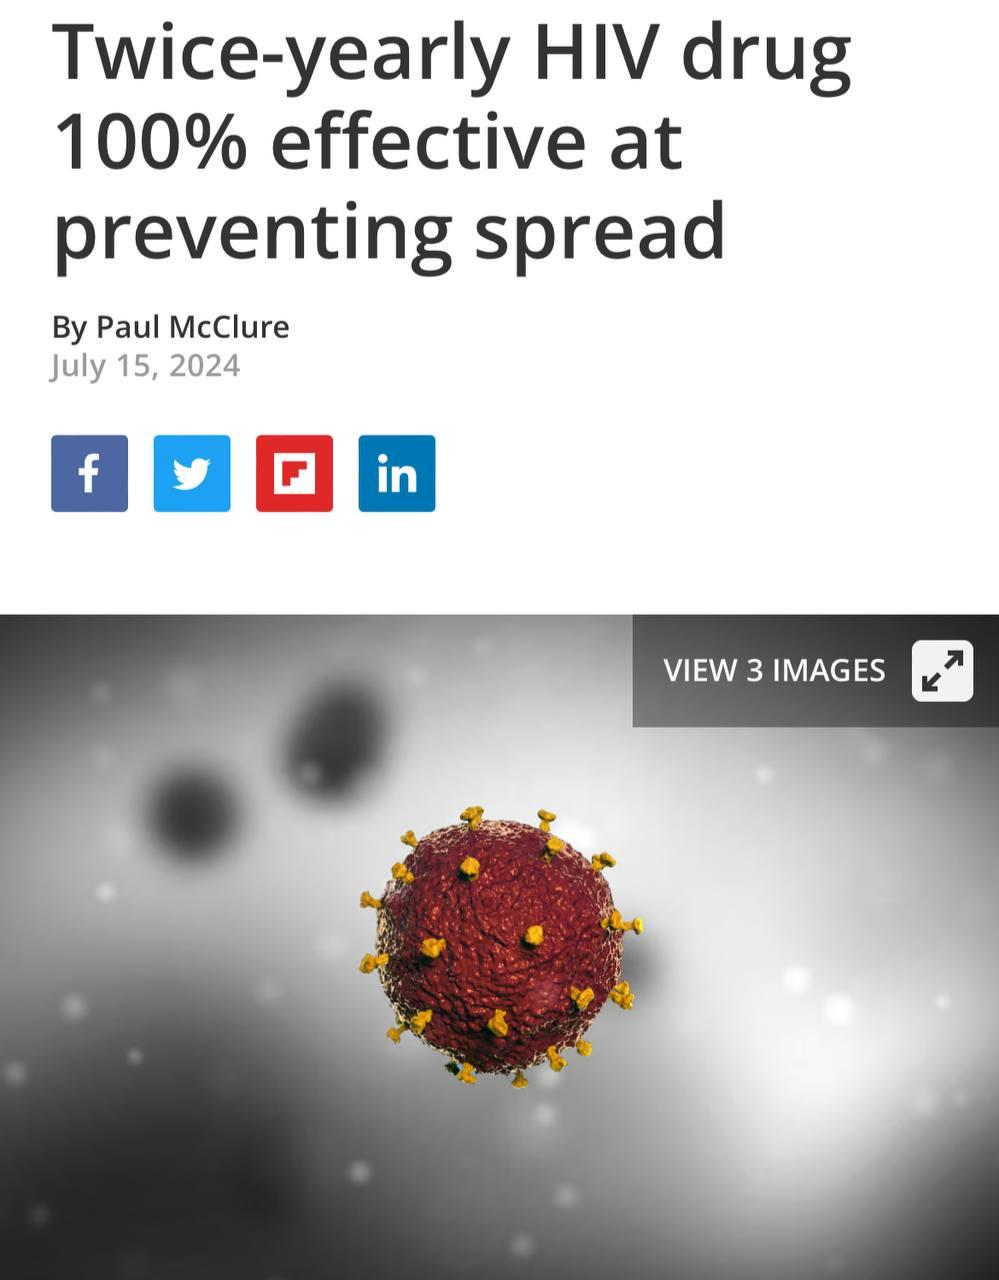 ВИЧ побеждён — учёные создали препарат, который на 100% защищает людей от ВИЧ-инфекции и предотвращает размножение вируса в организме.